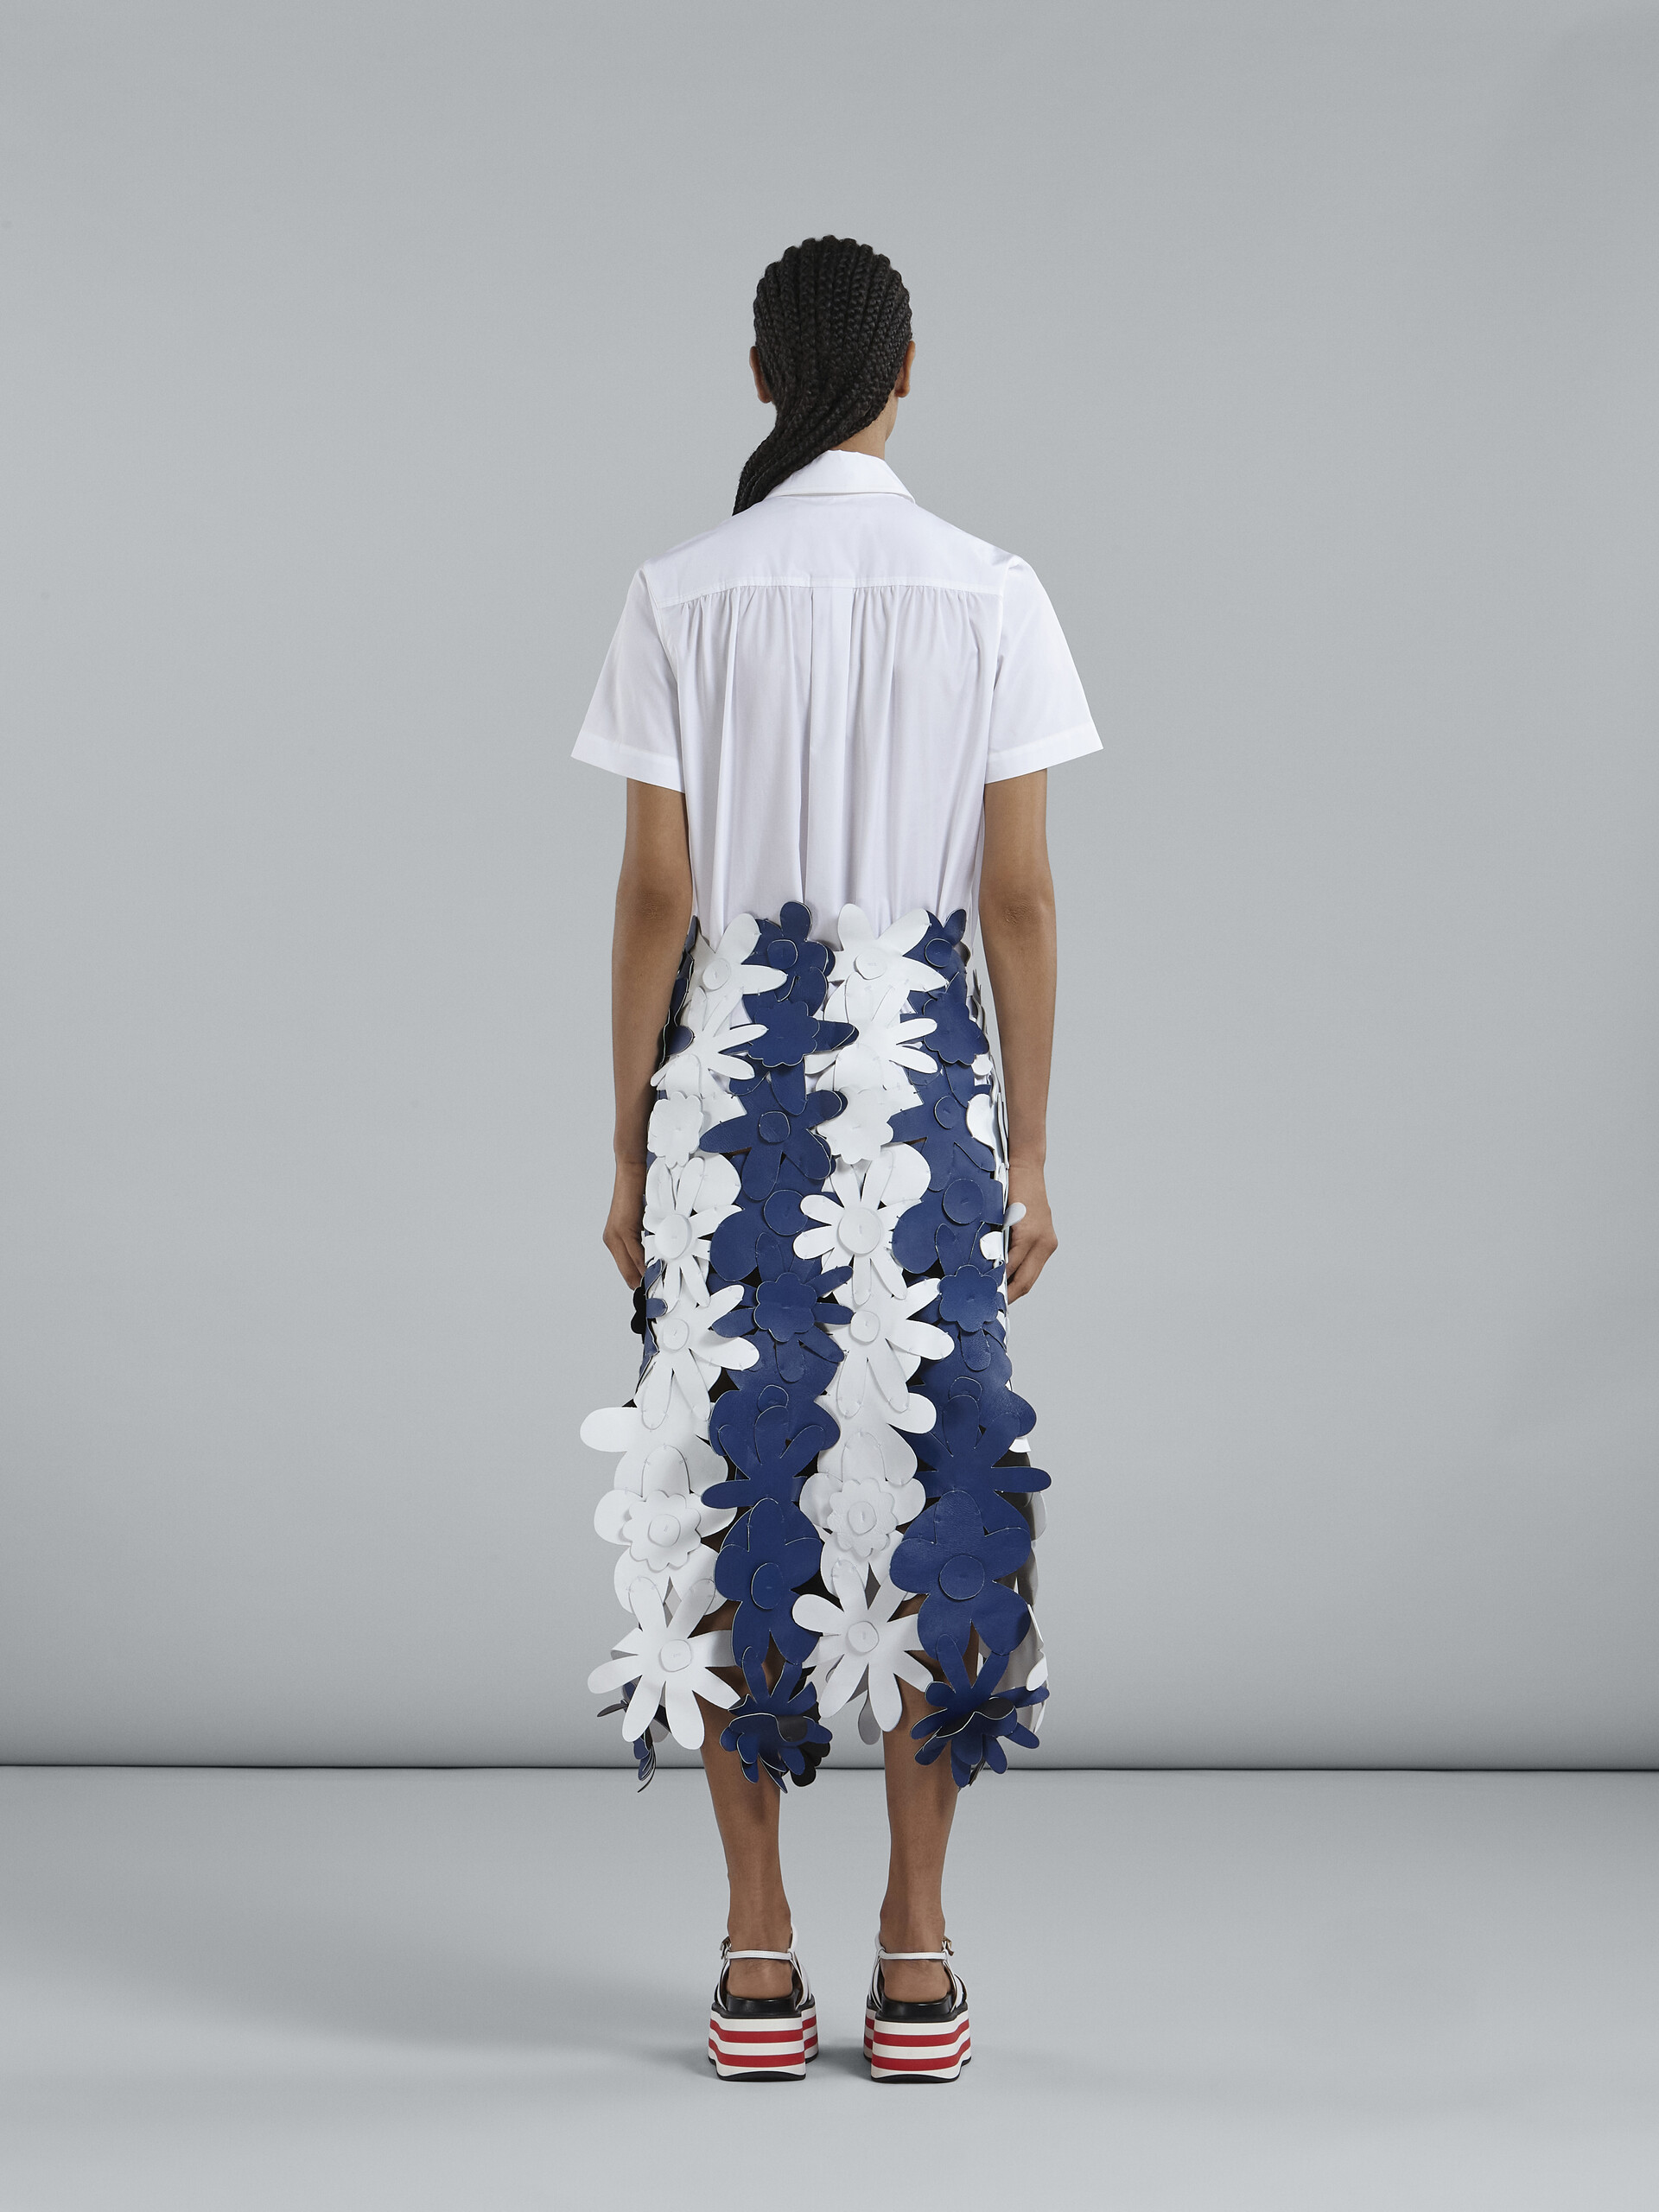 Falda larga con flores de piel bordadas - Faldas - Image 3